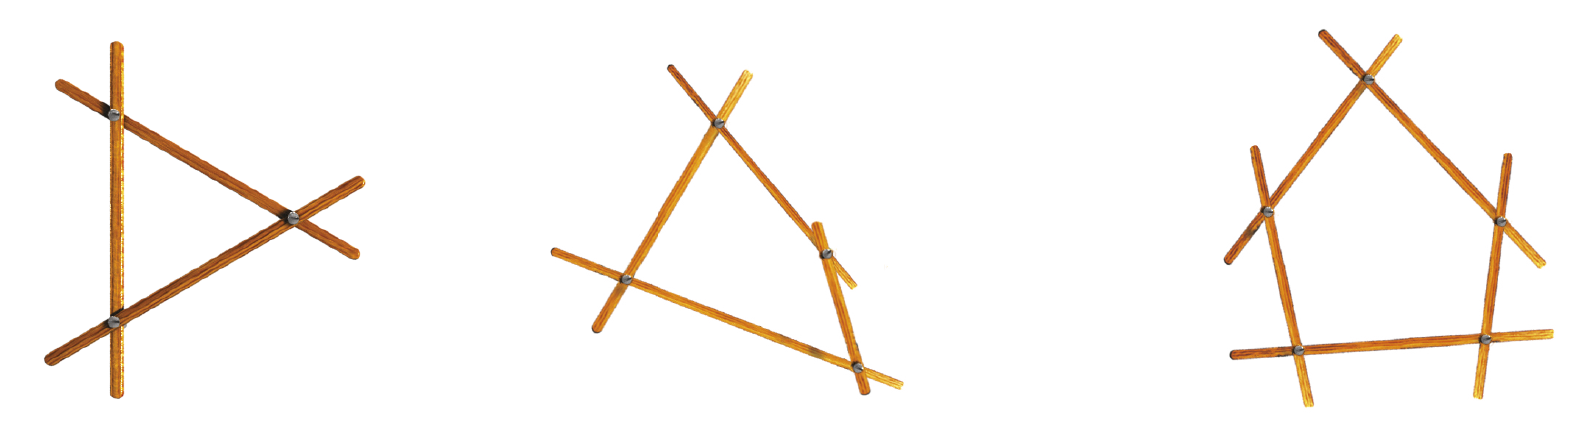 Ilustração: da esquerda para a direita, três varetas formando uma figura semelhante a um triângulo. À direita, quatro varetas formando uma figura semelhante a um quadrilátero. À direita, cinco varetas formando uma figura semelhante a um polígono de cinco lados.